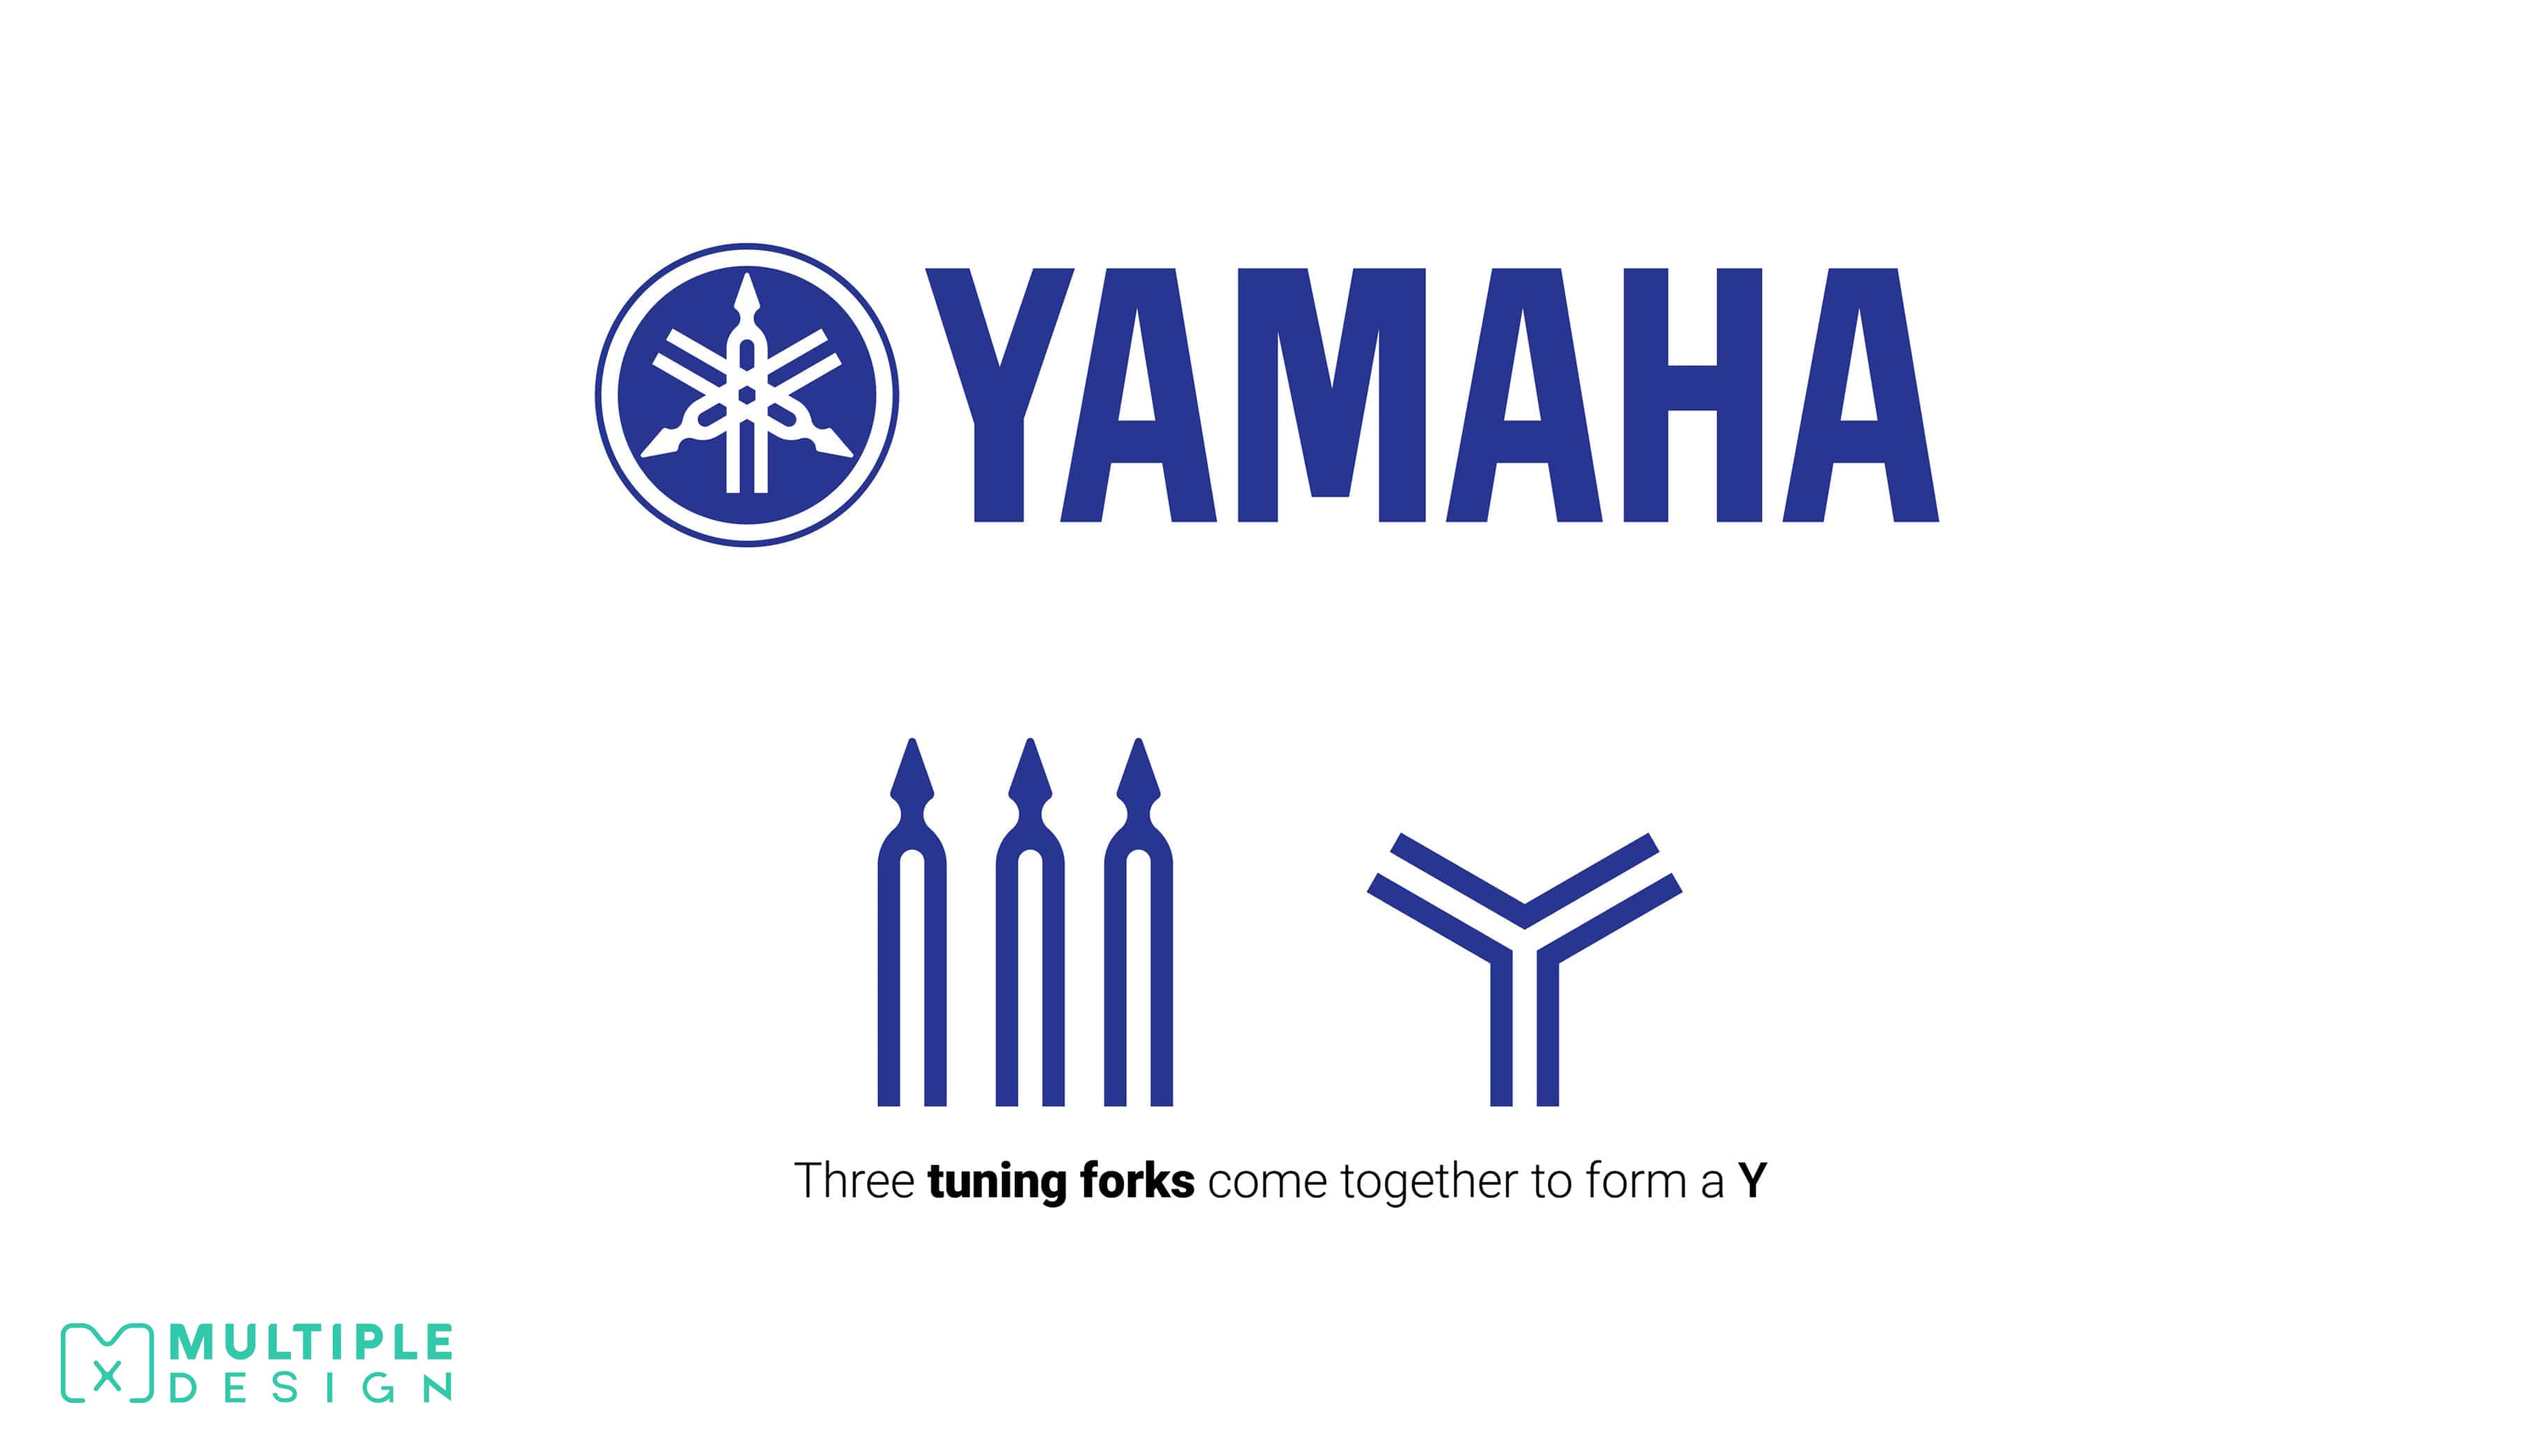 Yamama logo, tuning forks, y